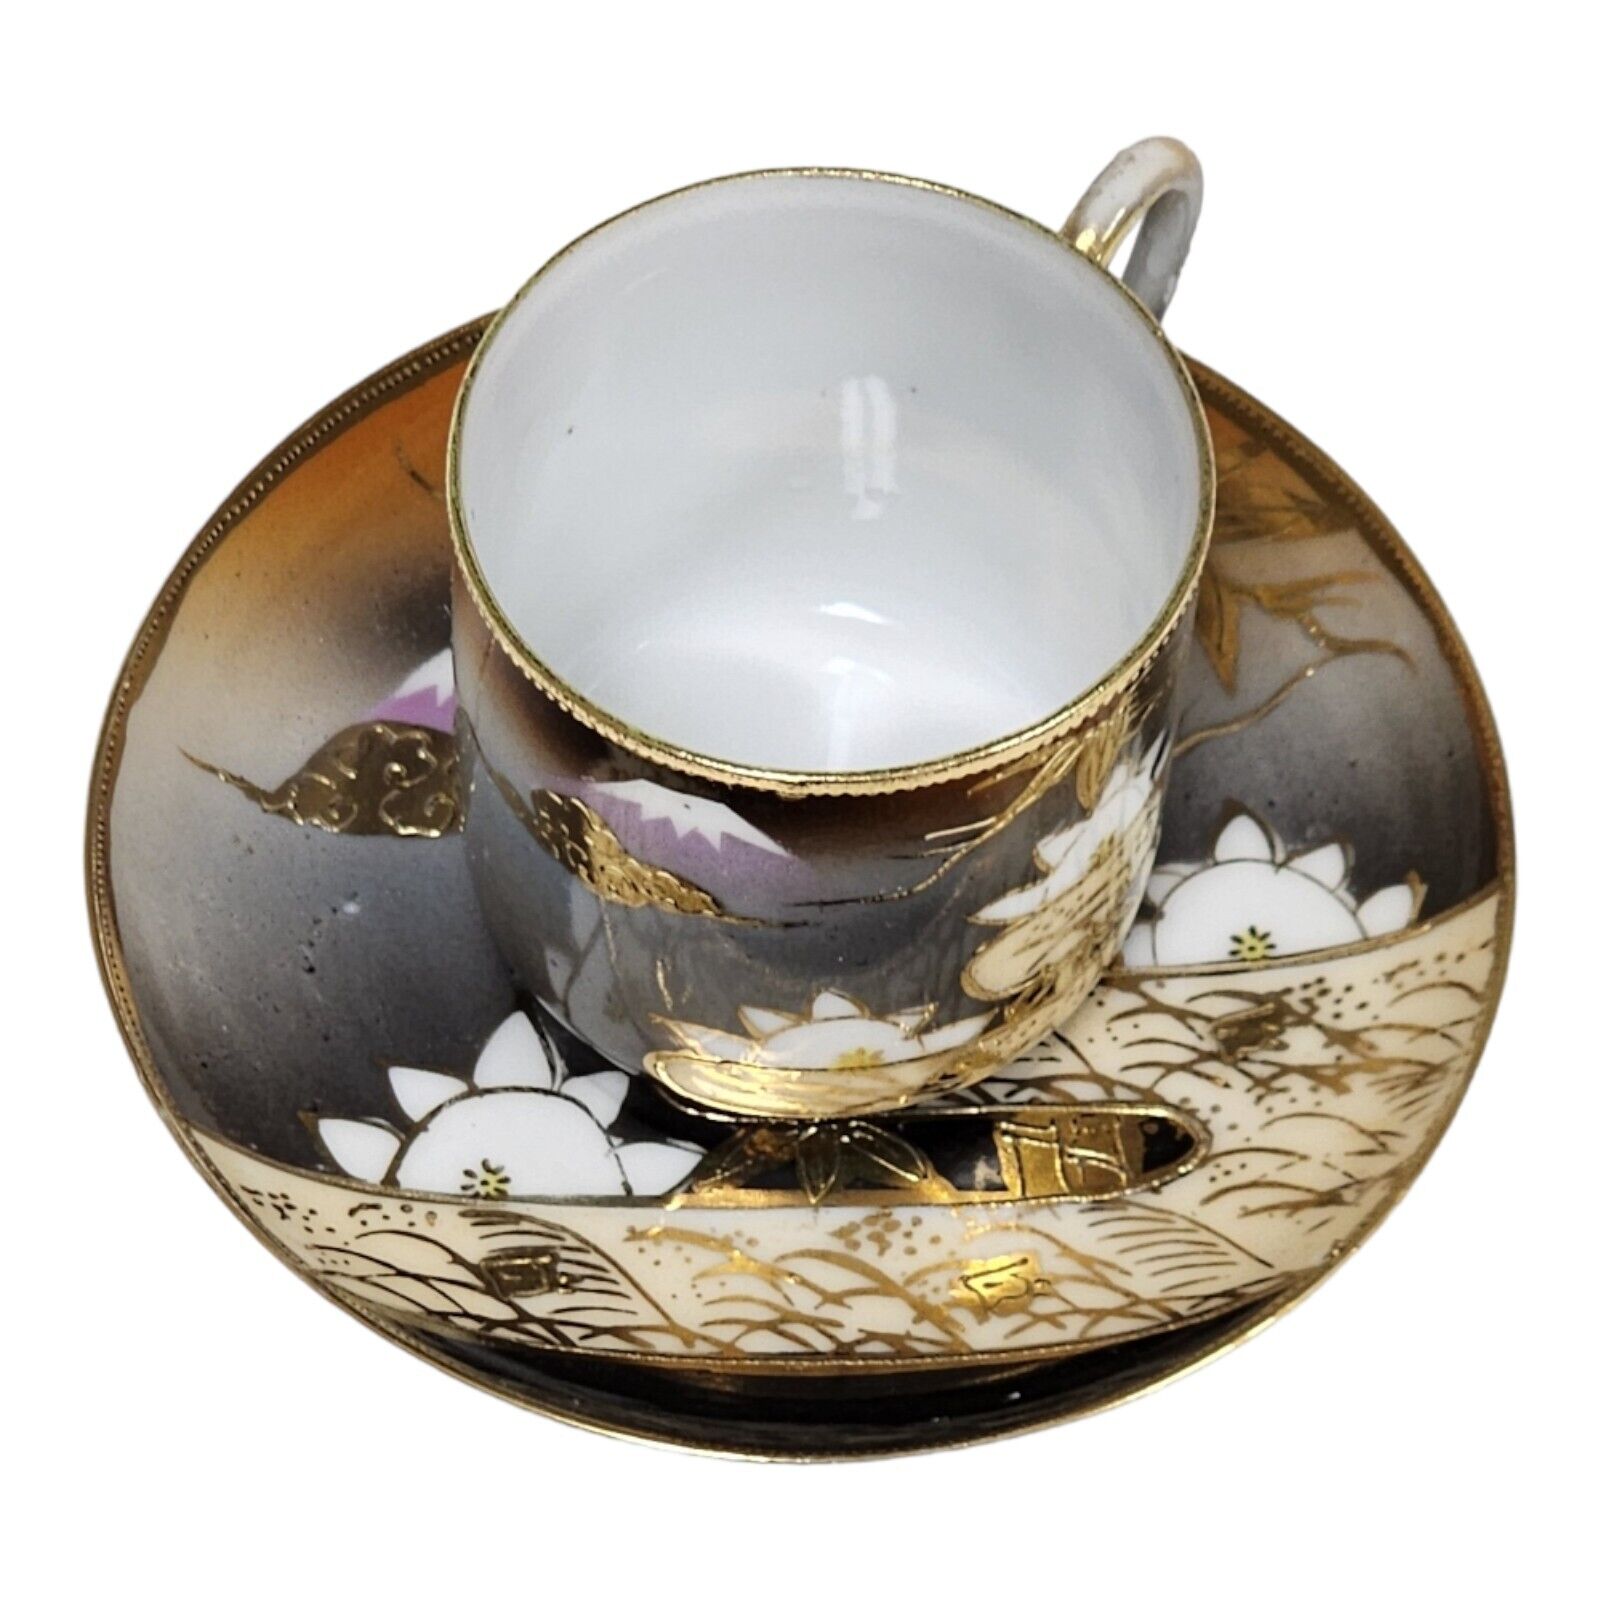 Mt Fuji Porcelain Cup & Saucer Demitasse Gold Gilded Artisan Japanese Tea Set